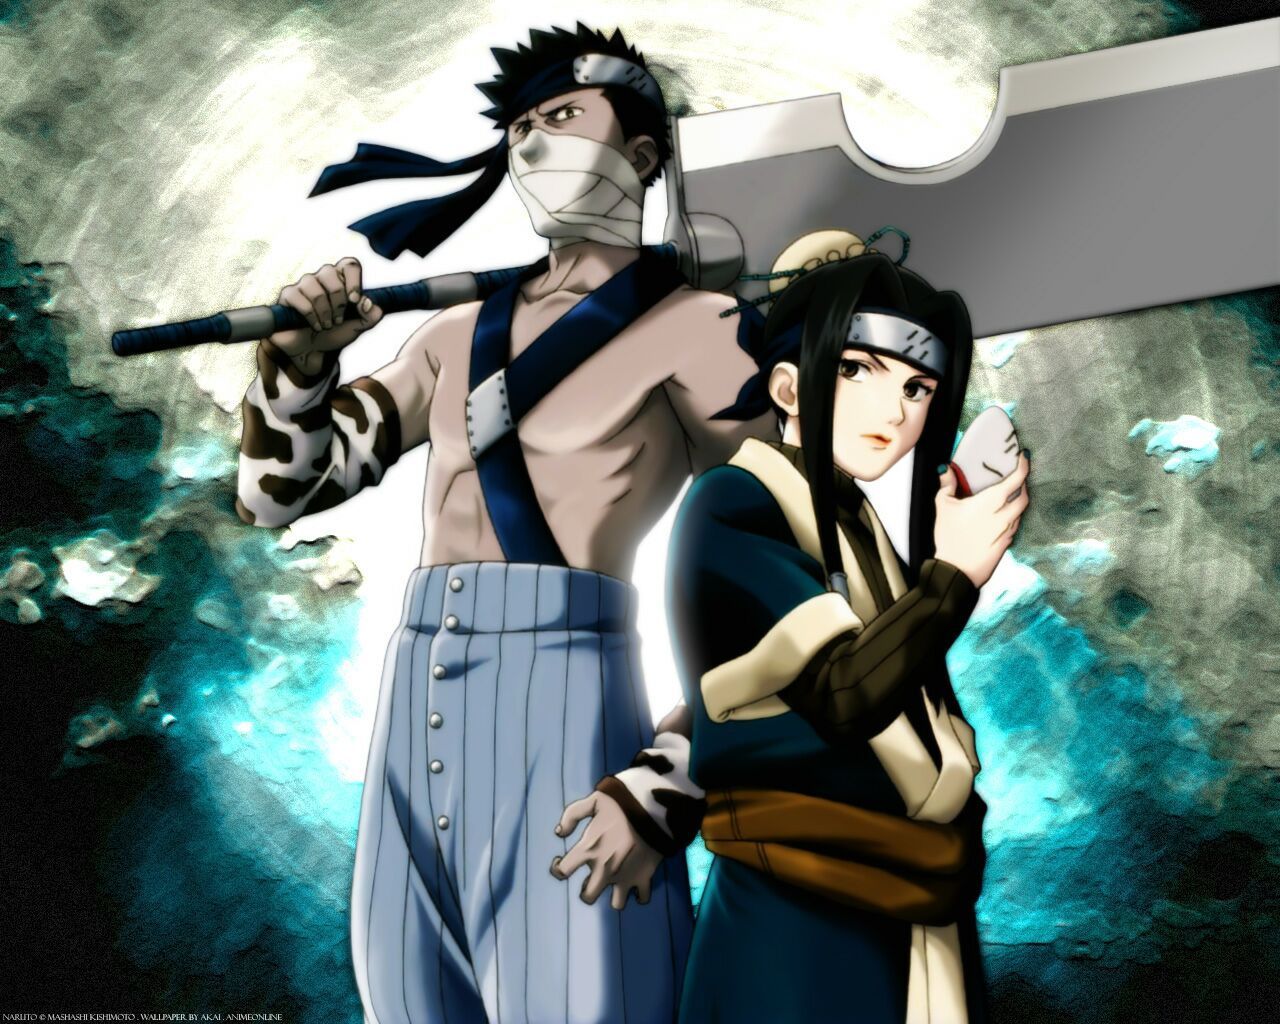 Zabuza and Haku. Anime naruto, Naruto, Naruto wallpaper